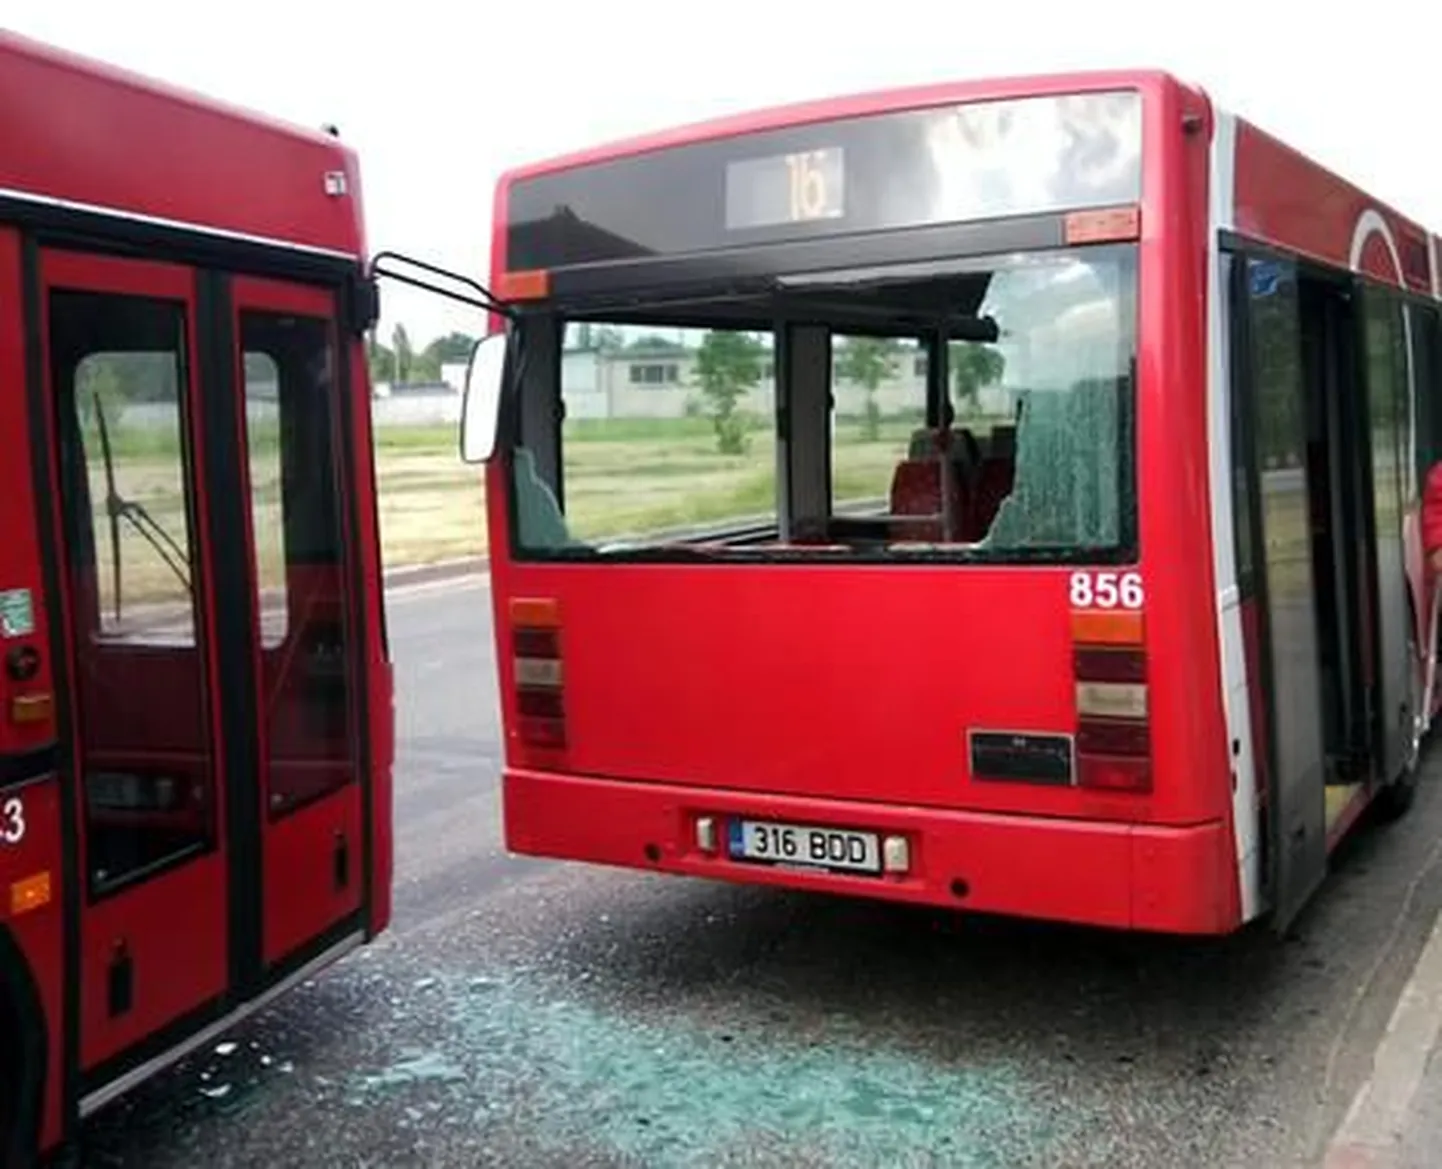 Автобус разбил зеркалом окно другого автобуса.